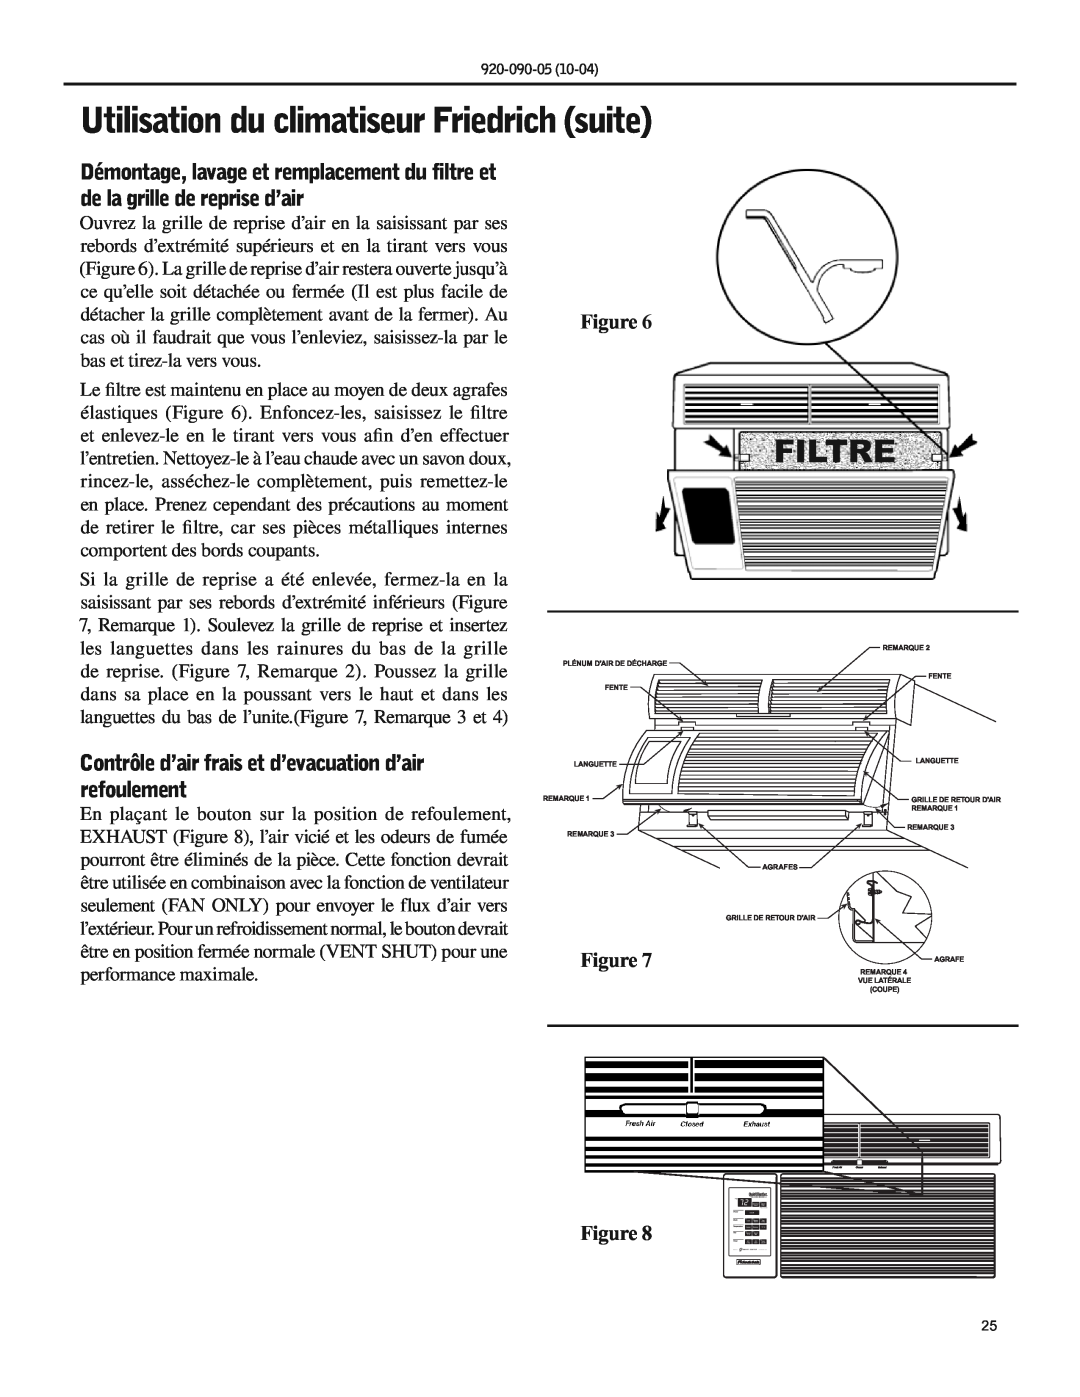 Friedrich SS09 manual Utilisation du climatiseur Friedrich suite, Filtre 